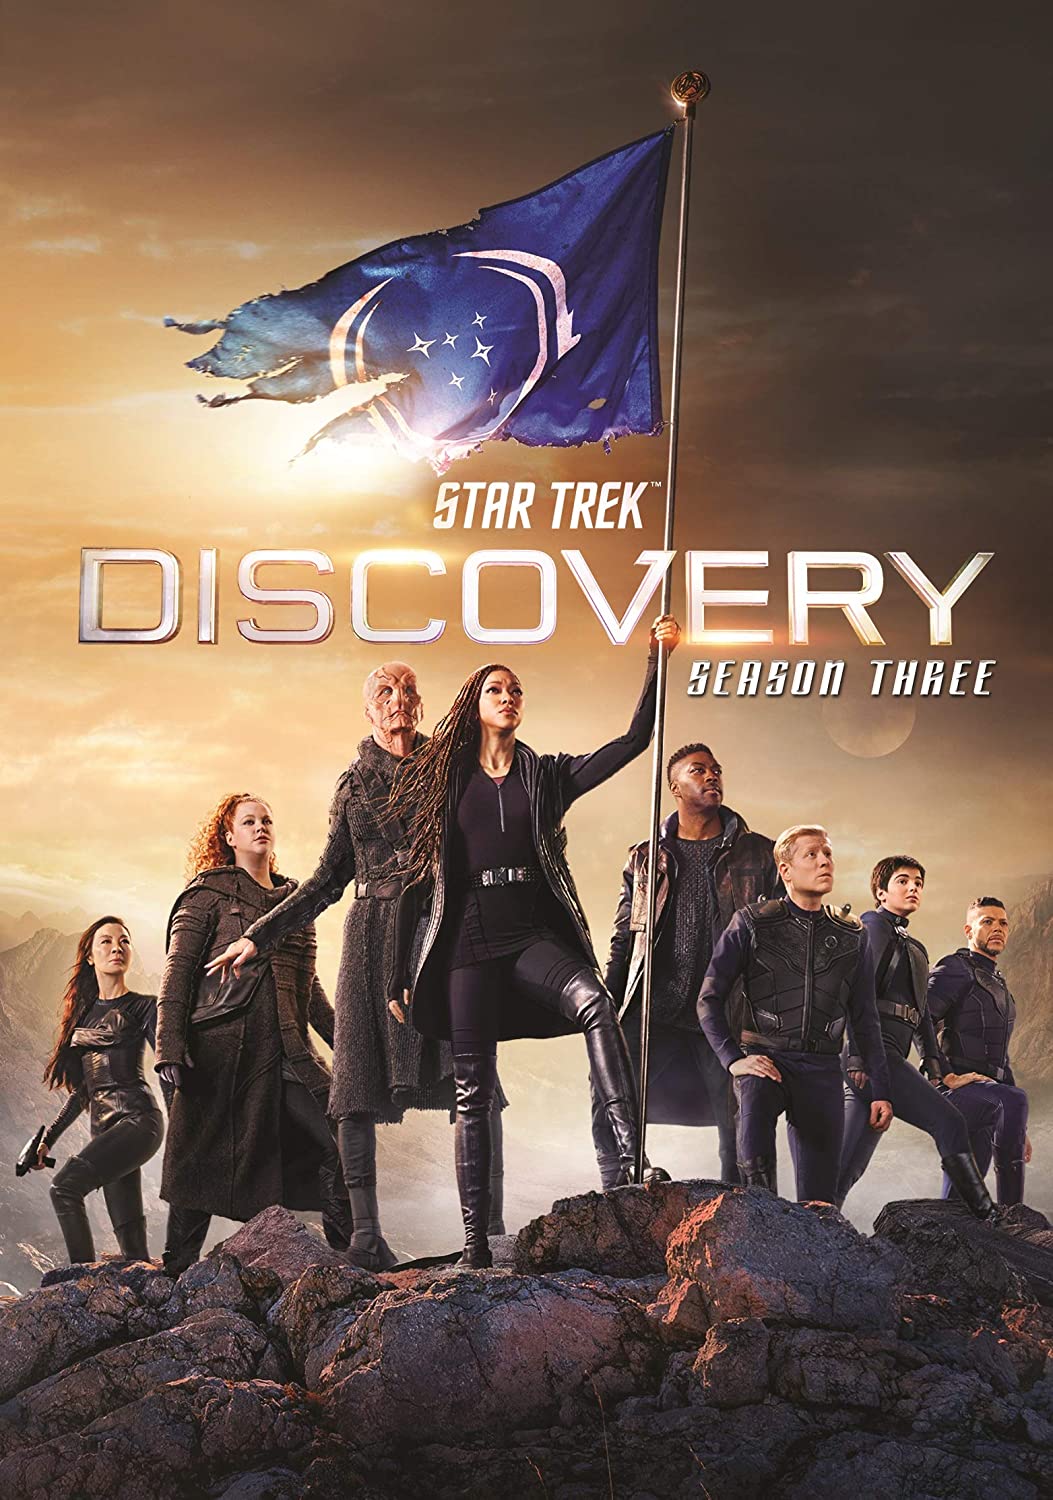 ดูหนังออนไลน์ Star Trek Discovery Season 3 EP2 สตาร์ เทรค ดิสคัฟเวอรี่ ซีซั่นที่ 3 ตอนที่ 2